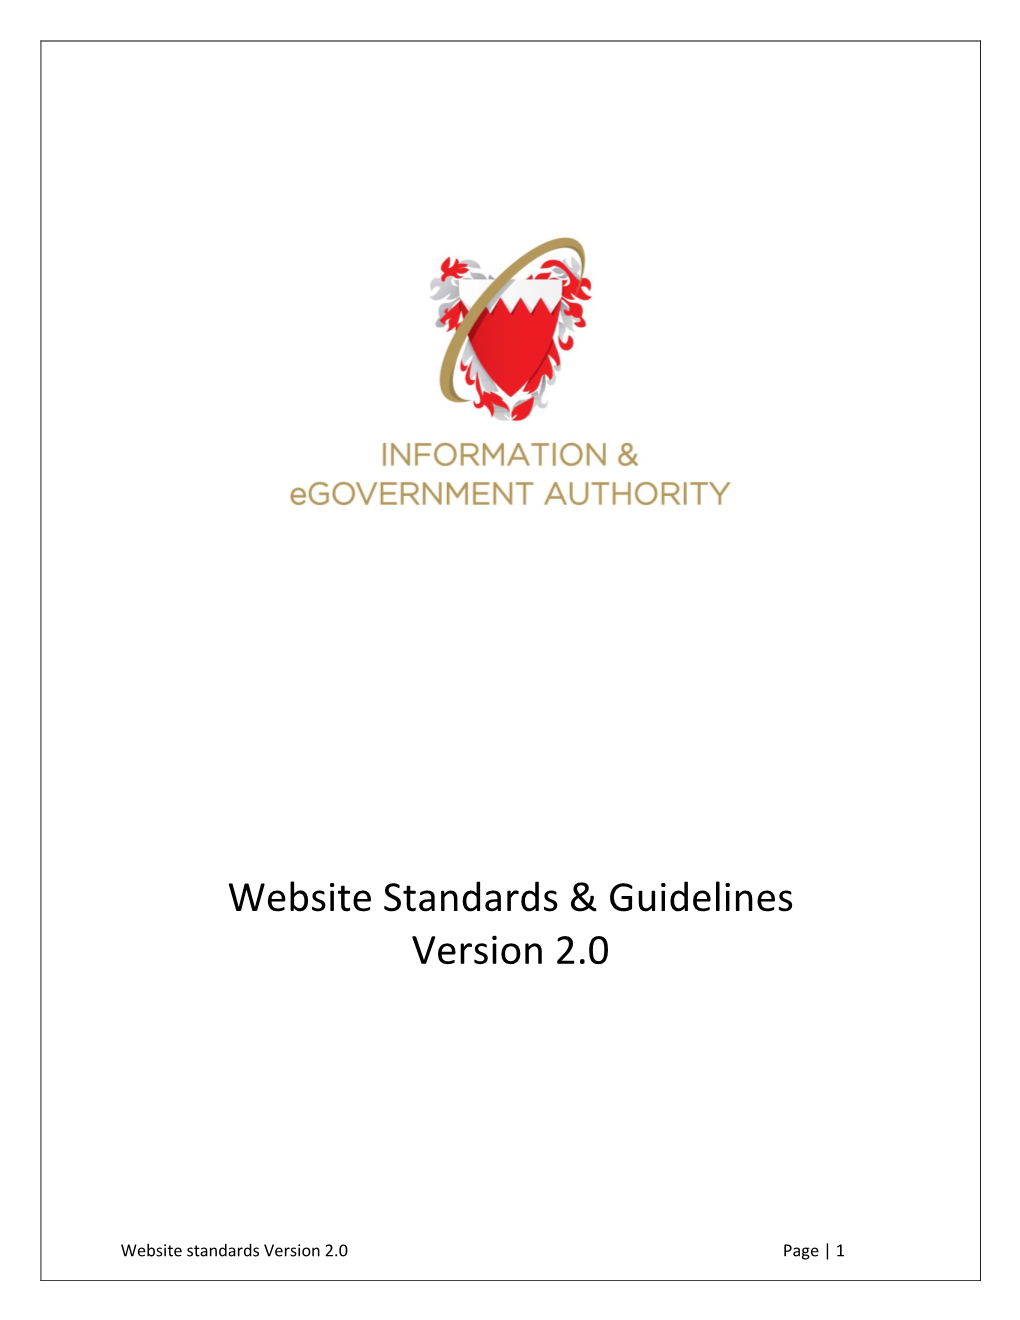 Website Standards & Guidelines Version 2.0